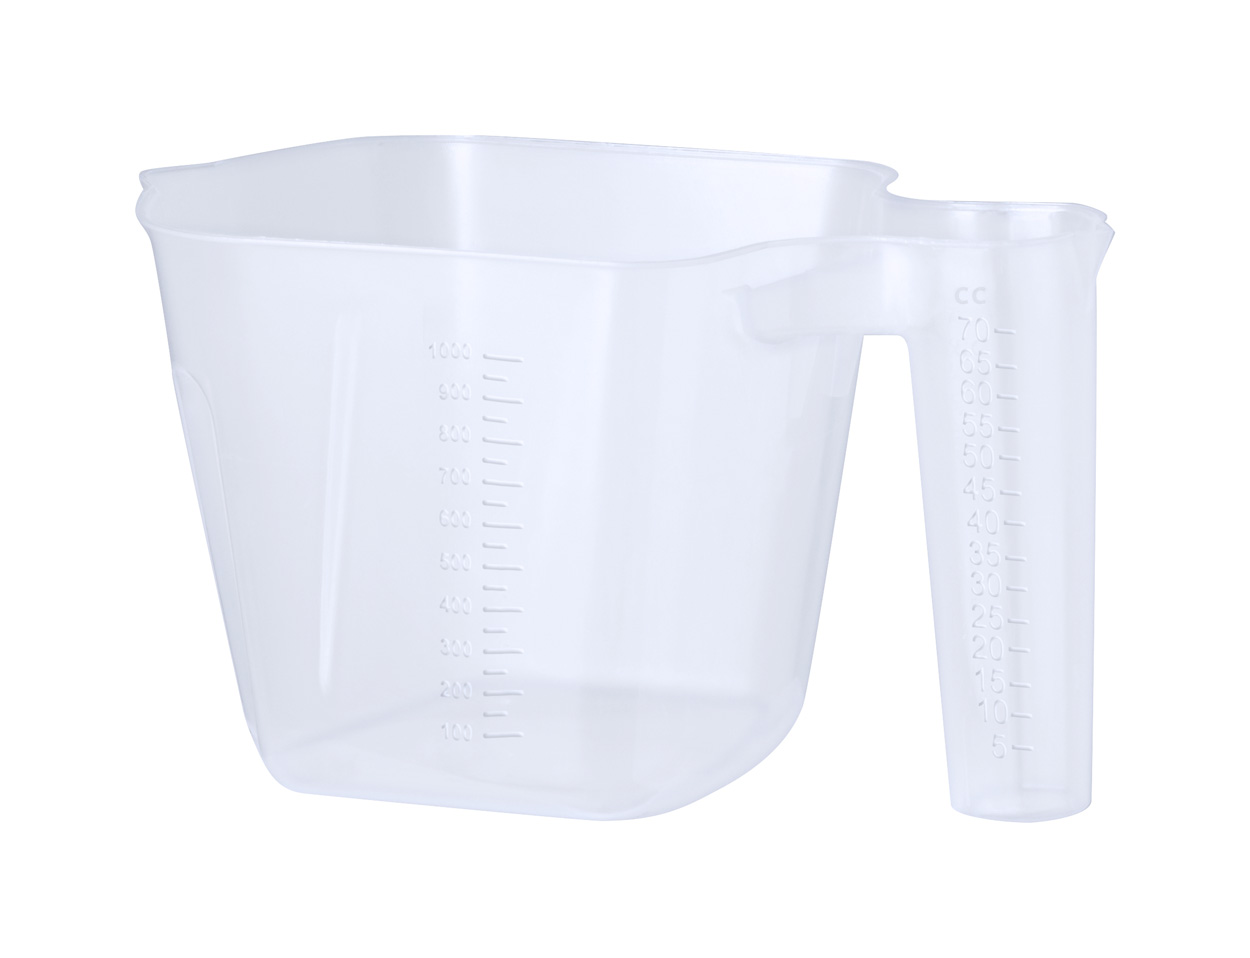 Lumer measuring cup - Transparente